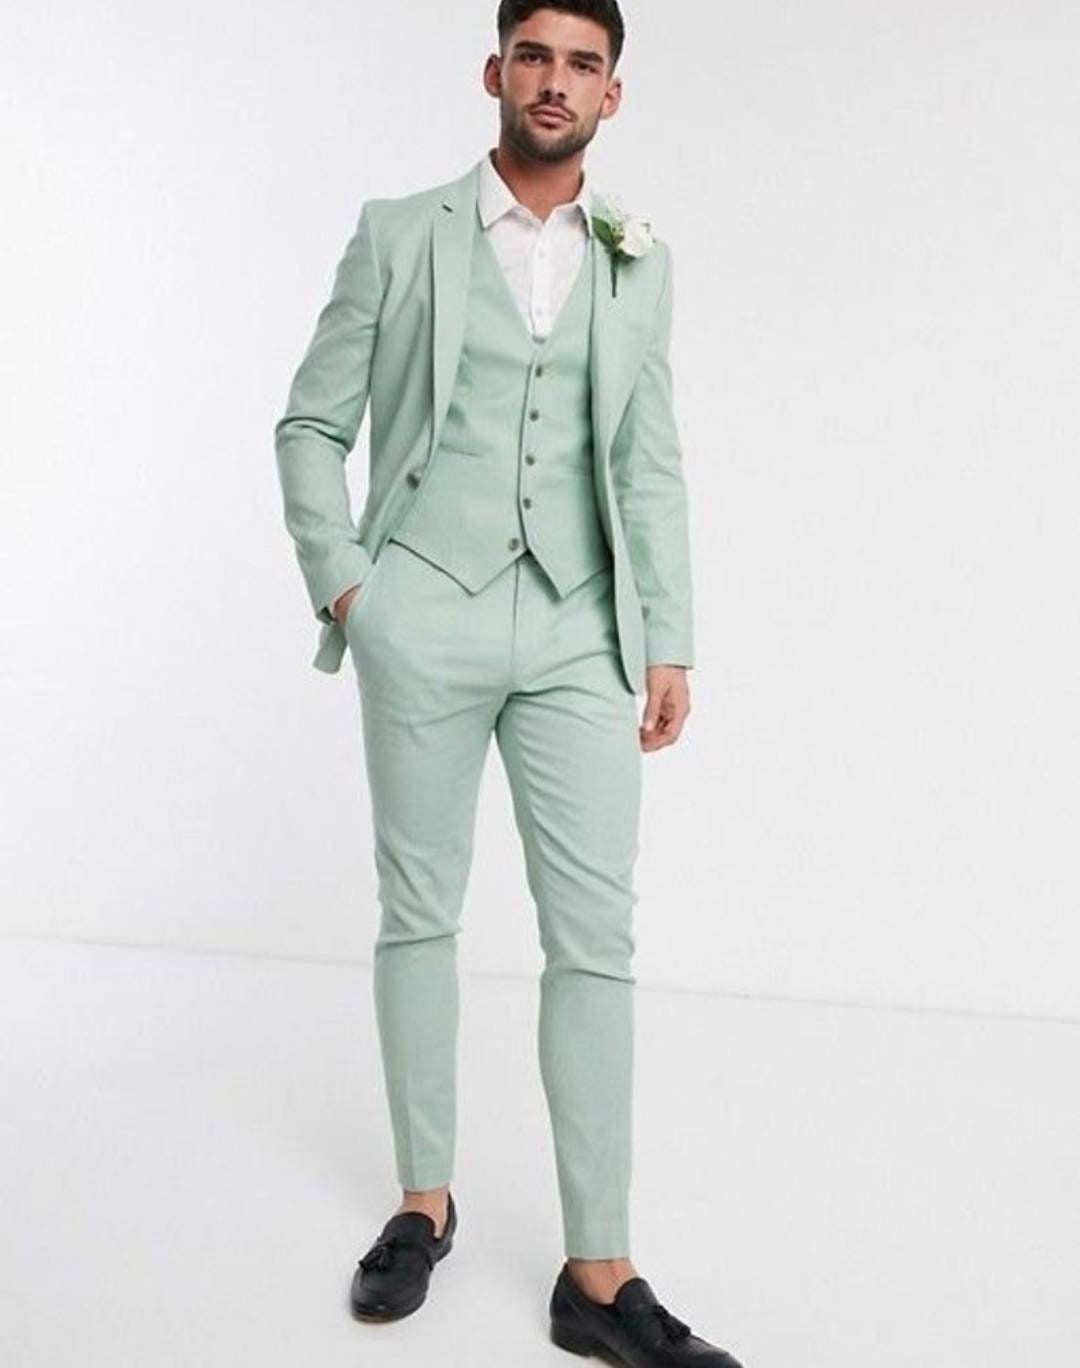 Men Suits 3 Piece mint Green Suits Men Slim Fit Suits - Etsy